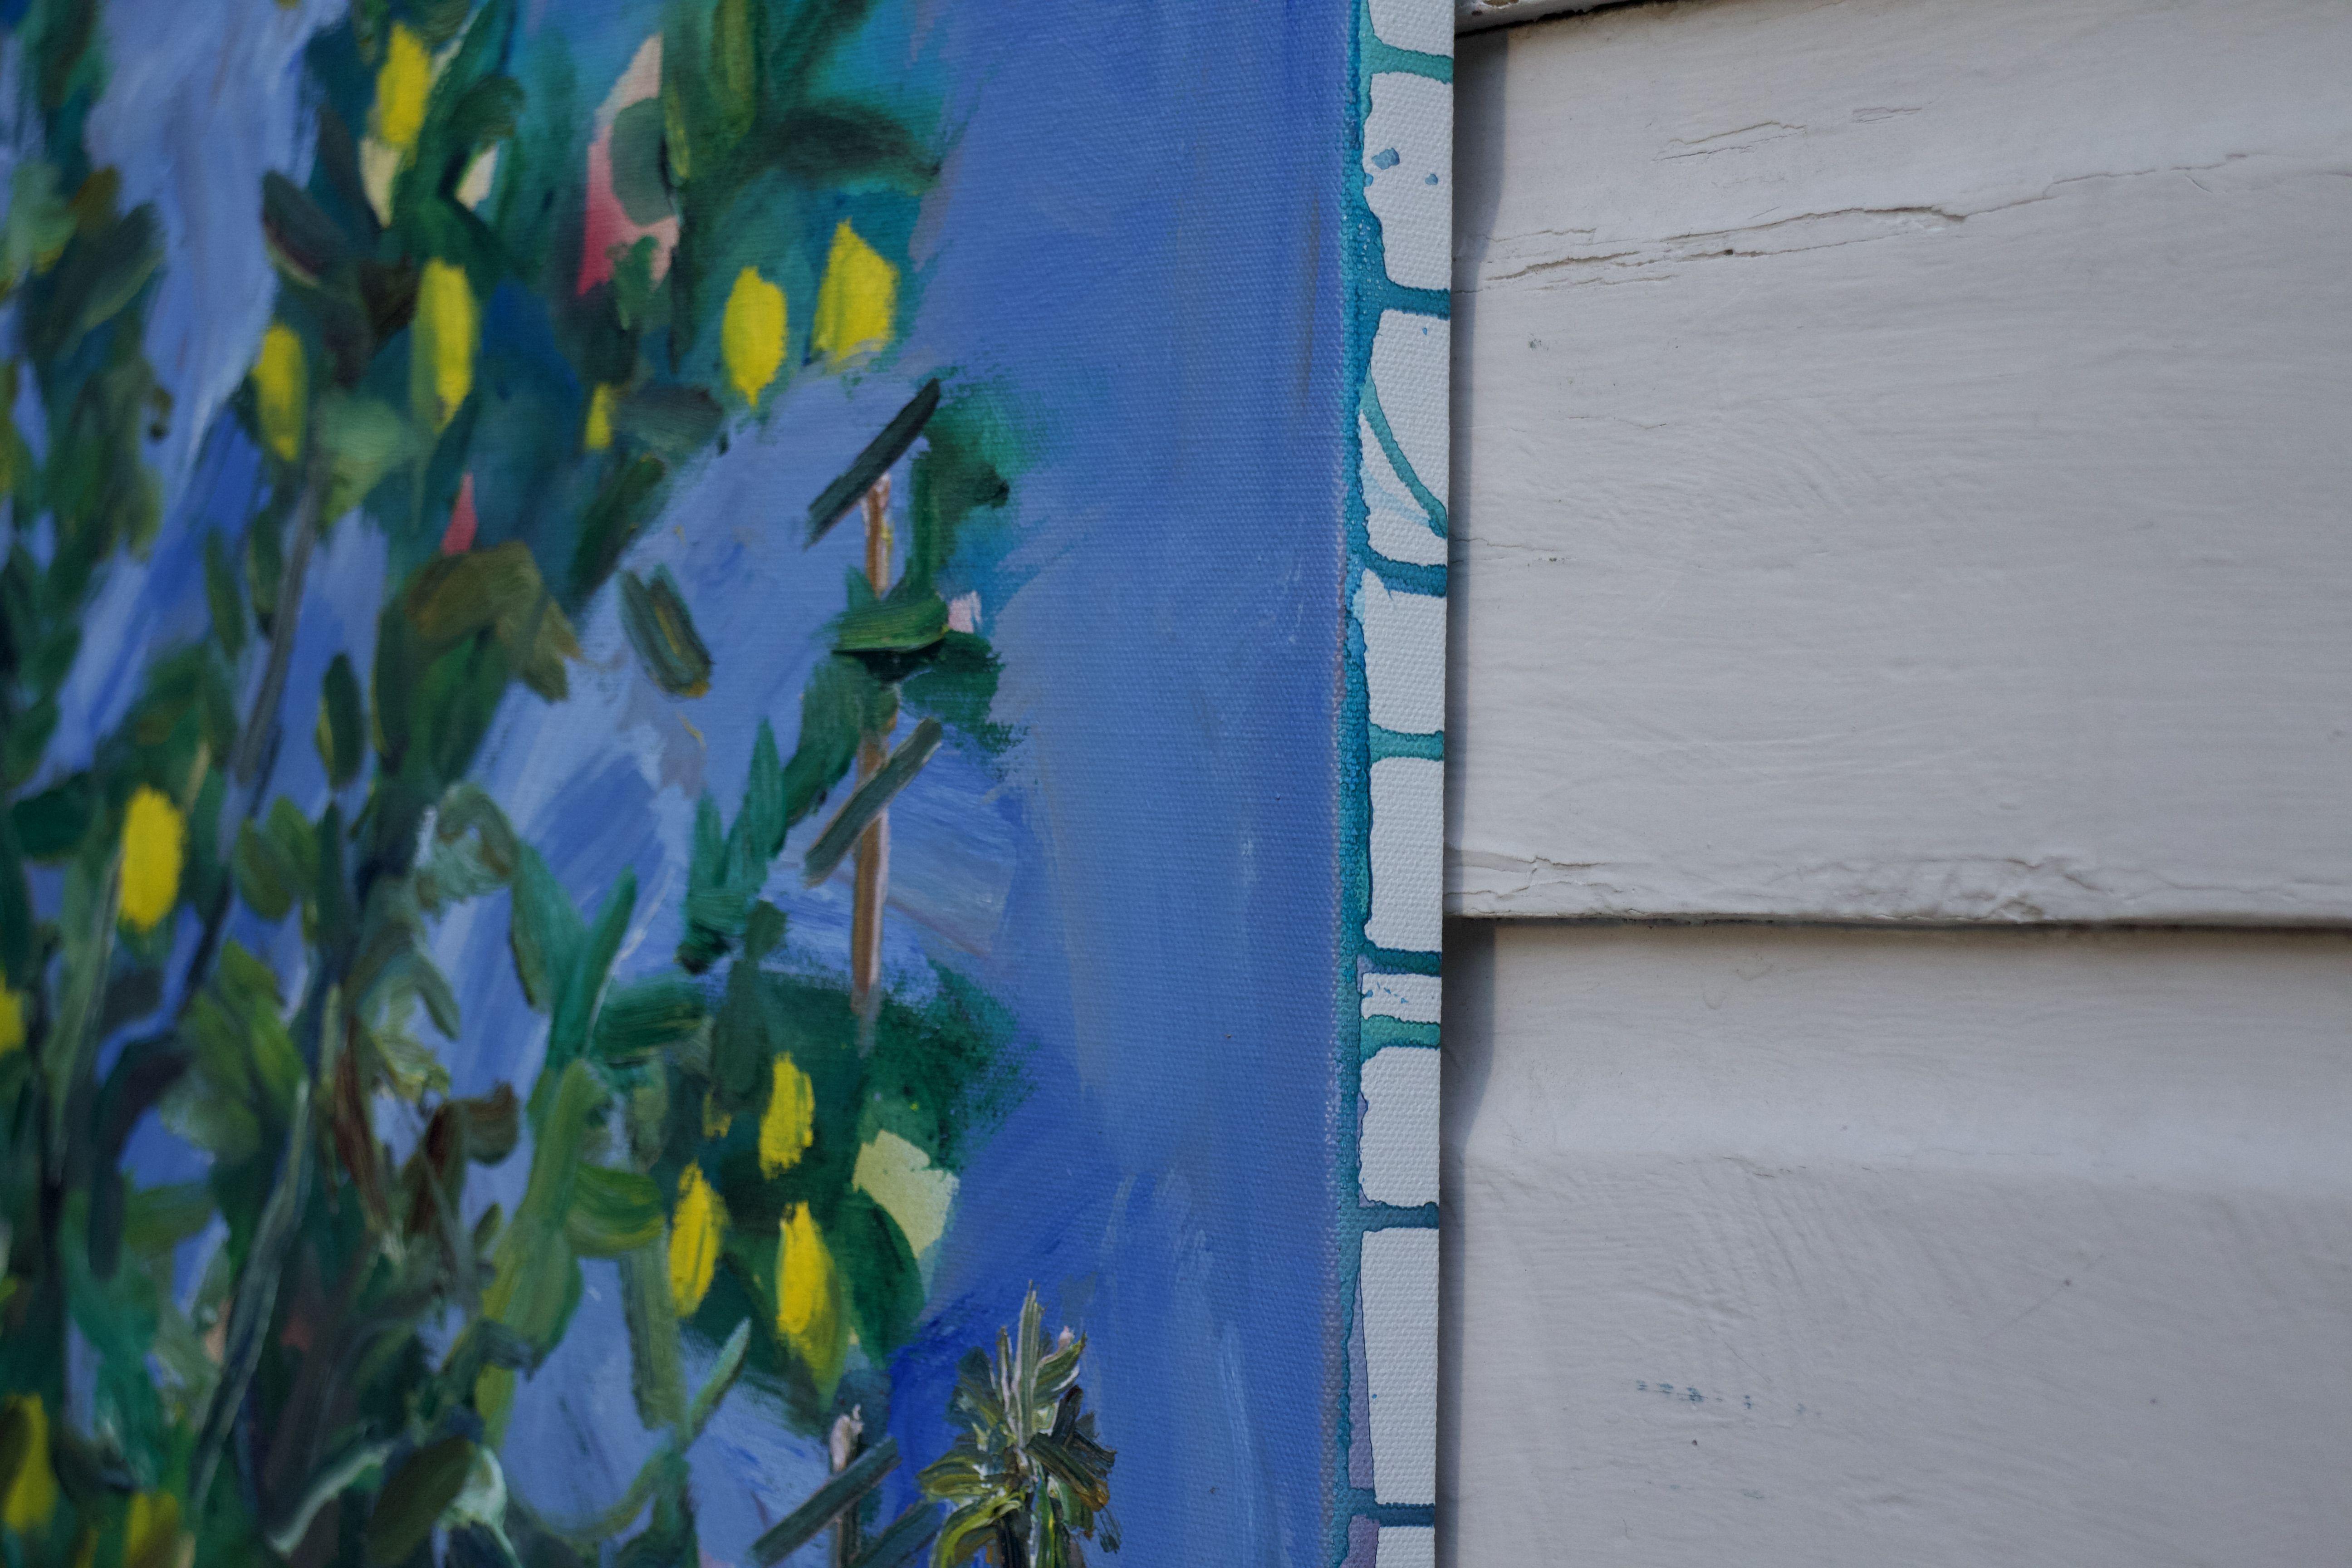 J'ai beaucoup peint ce citronnier dans le jardin pendant la quarantaine. Peinture en aérosol, acrylique et huile sur toile. Si vous regardez la fenêtre de gauche, vous pouvez voir mon portrait :: : Peinture : : Contemporaine : : Cette pièce est